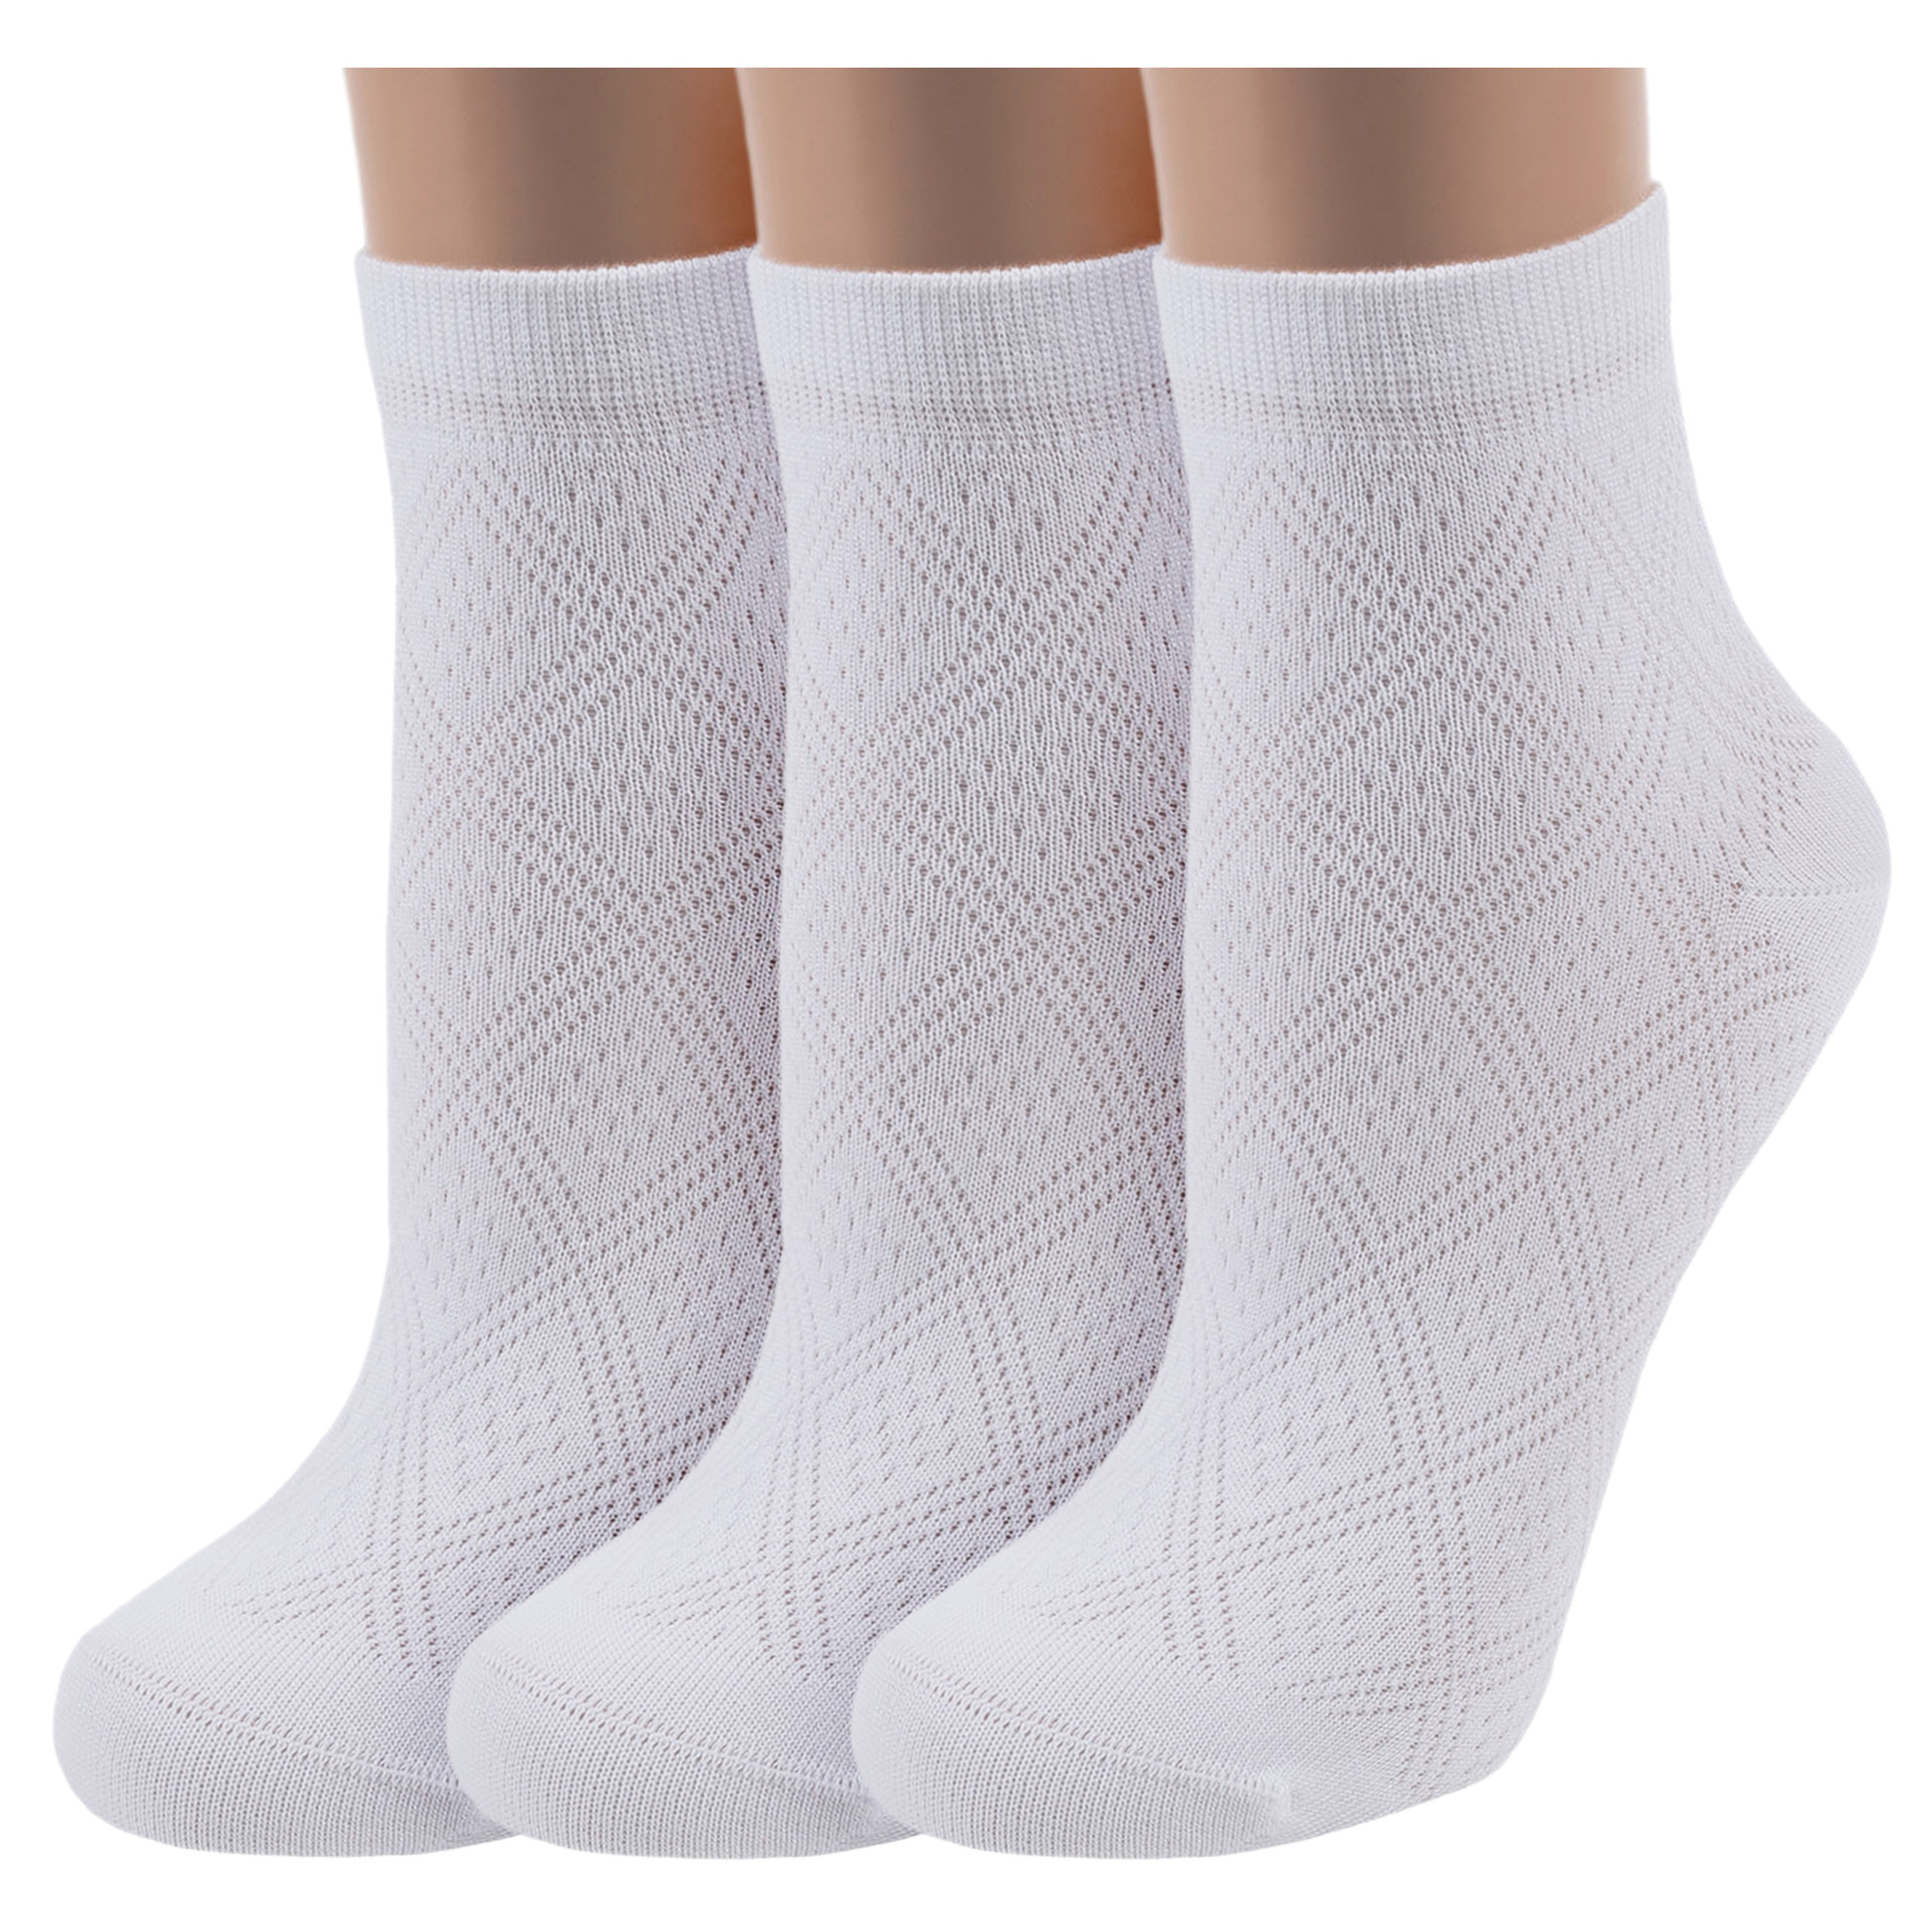 Комплект носков женских ХОХ 3-G-5Rb белых 25